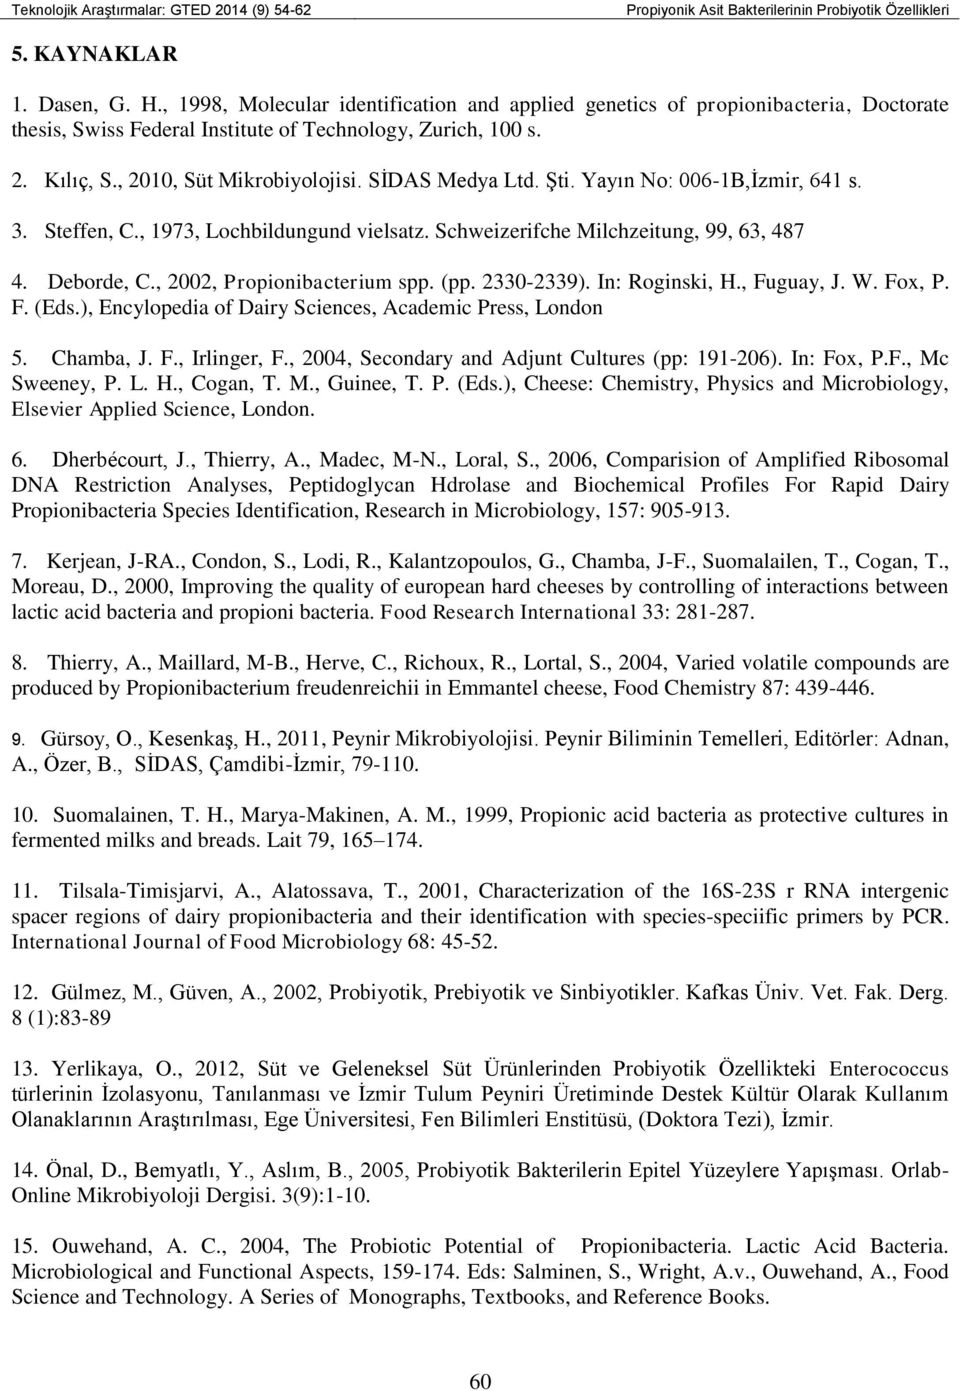 SİDAS Medya Ltd. Şti. Yayın No: 006-1B,İzmir, 641 s. 3. Steffen, C., 1973, Lochbildungund vielsatz. Schweizerifche Milchzeitung, 99, 63, 487 4. Deborde, C., 2002, Propionibacterium spp. (pp.